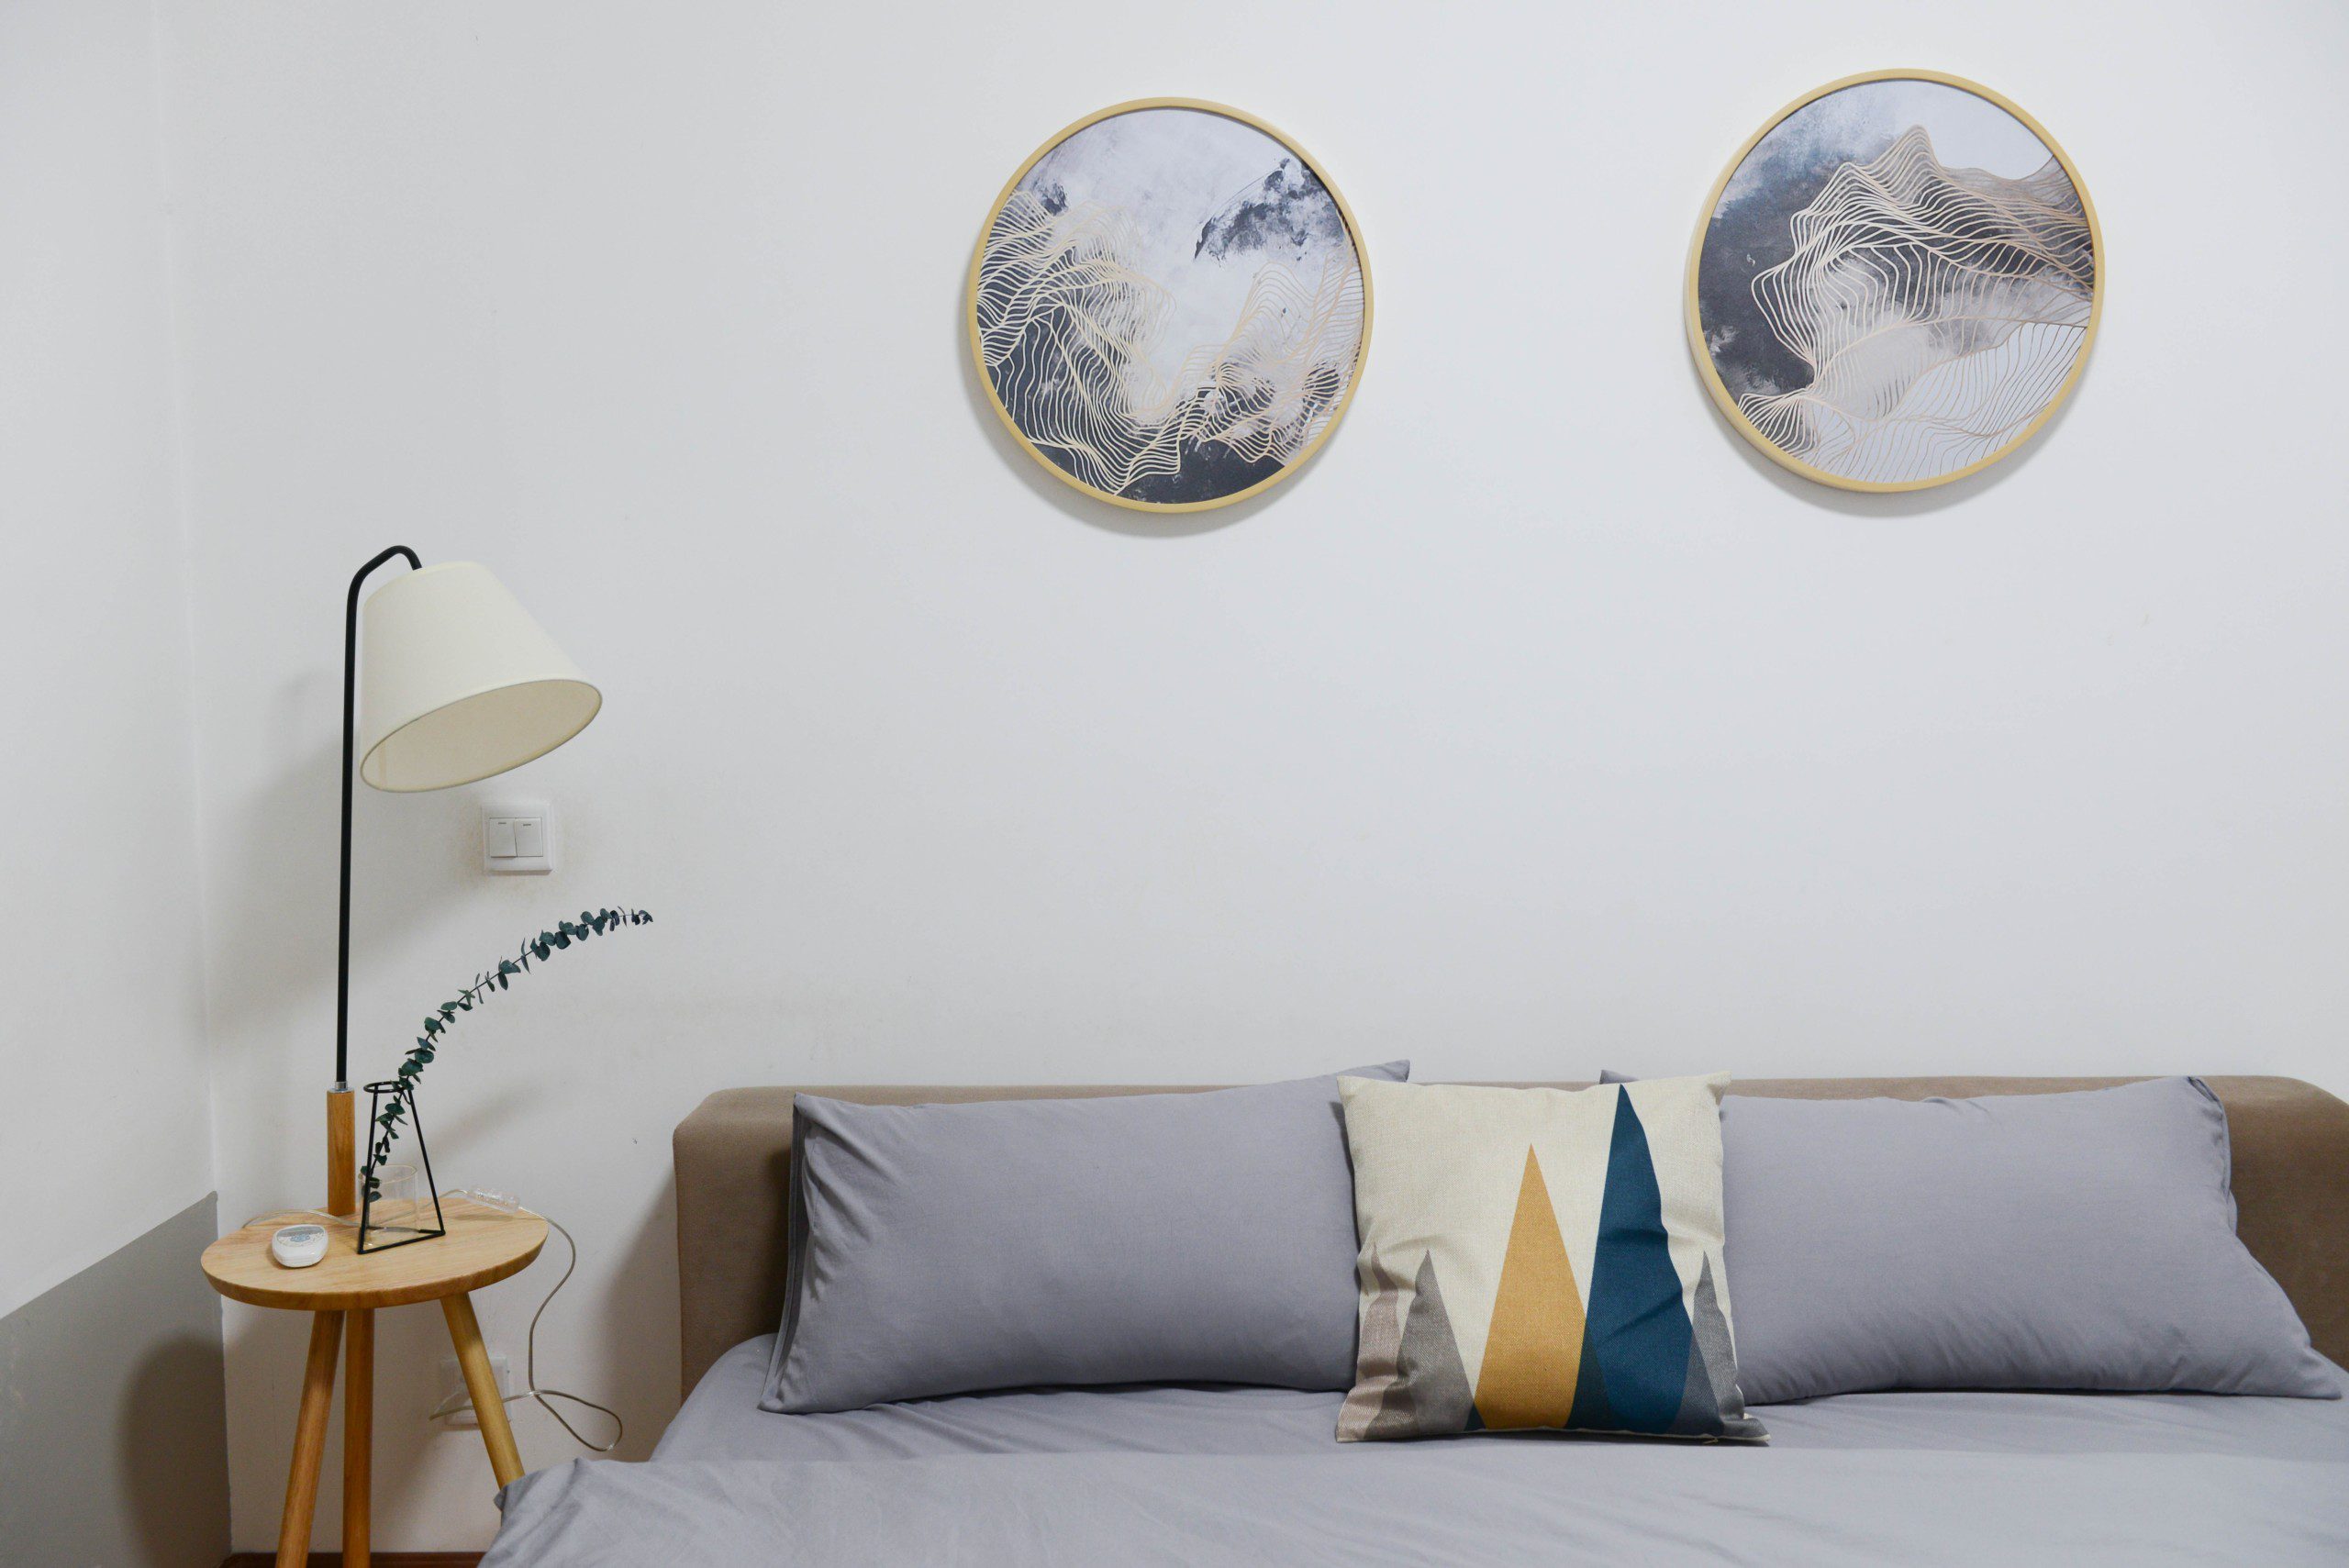 Imagem do canto de um quarto de casal com uma banco que está sendo usado como mesinha de cabeceira. Em cima do banco há um abajur e na parede um quadro com formas geométricas. 